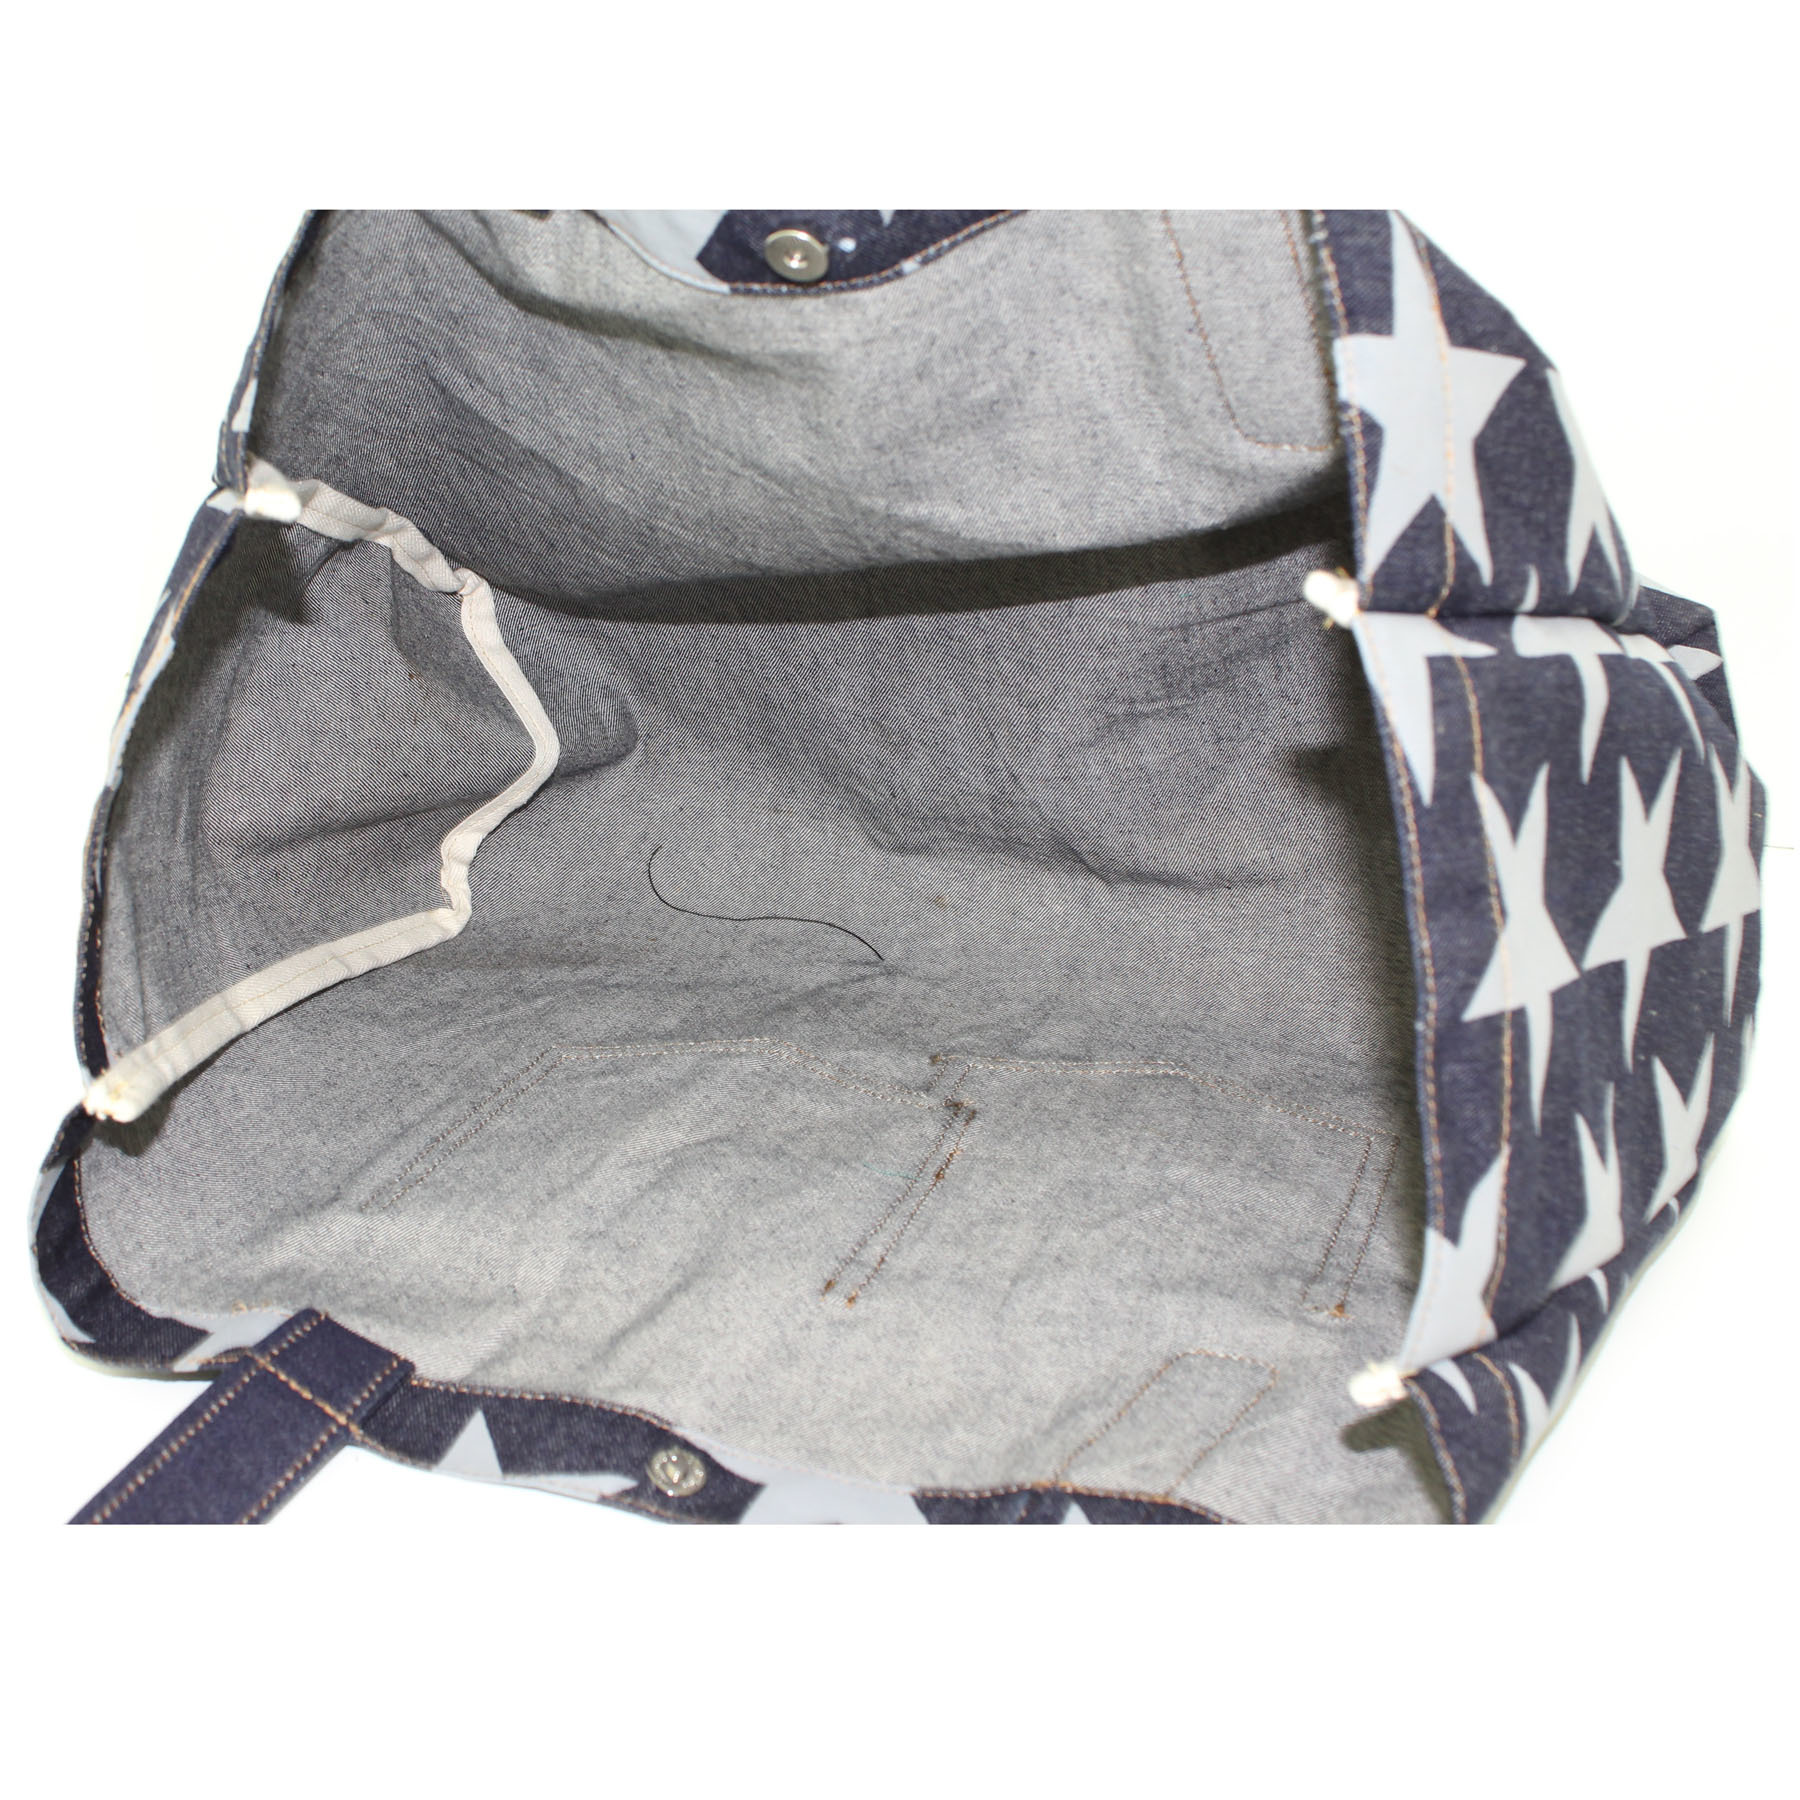 Denim Tote Bag With Designer Pocket